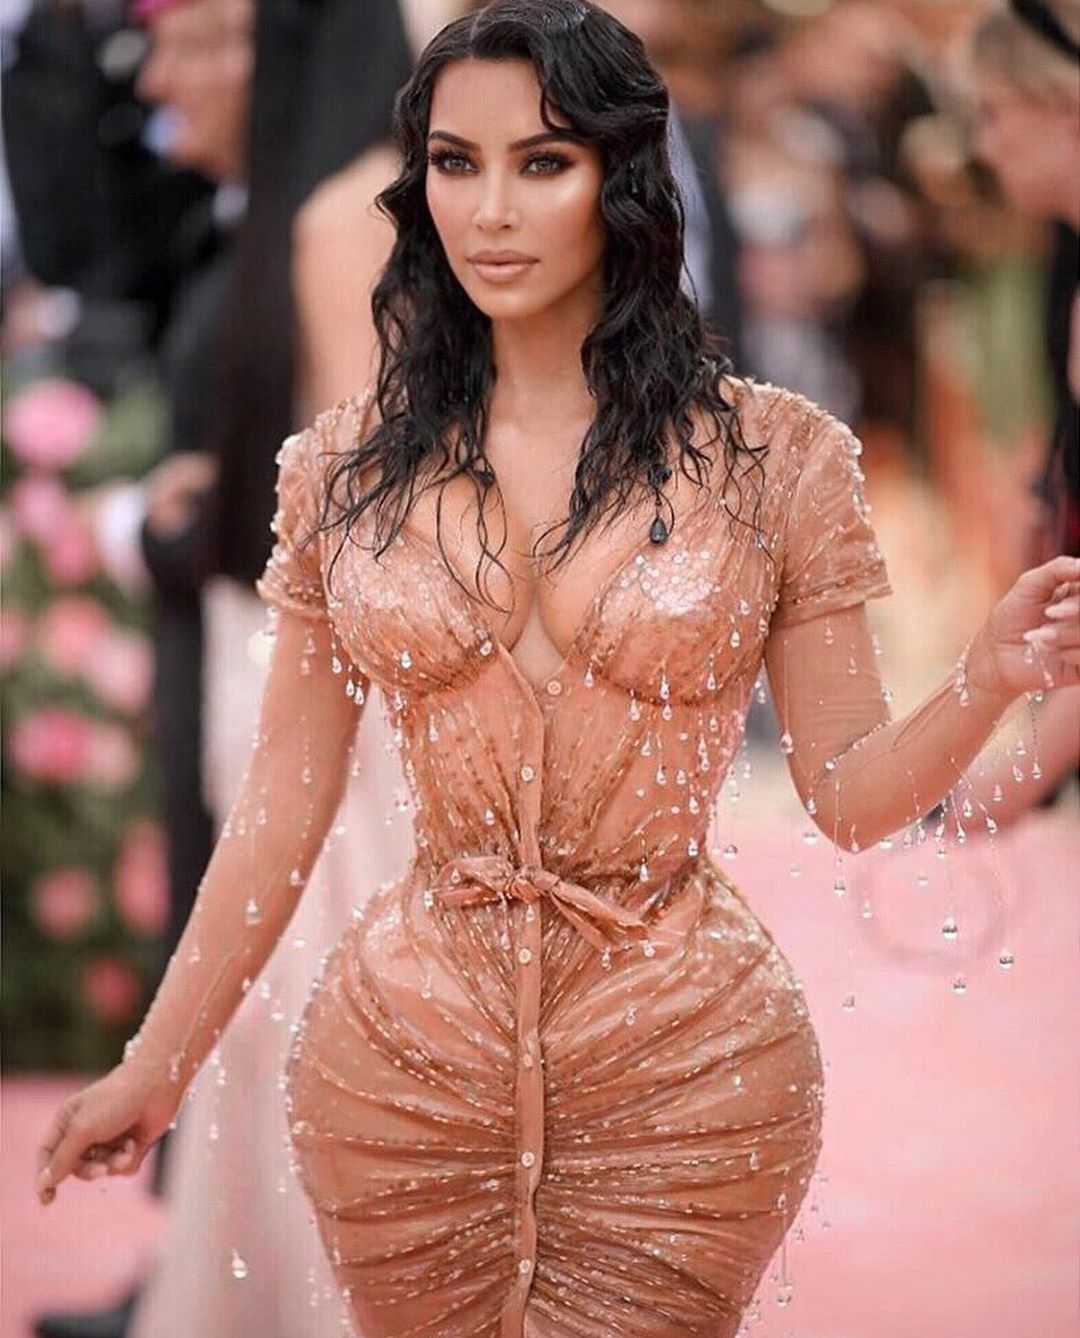 Θυμάσαι αυτό το φόρεμα της Kim Kardashian από το Met Gala; Μπορείς να το κάνεις στα… νύχια σου!